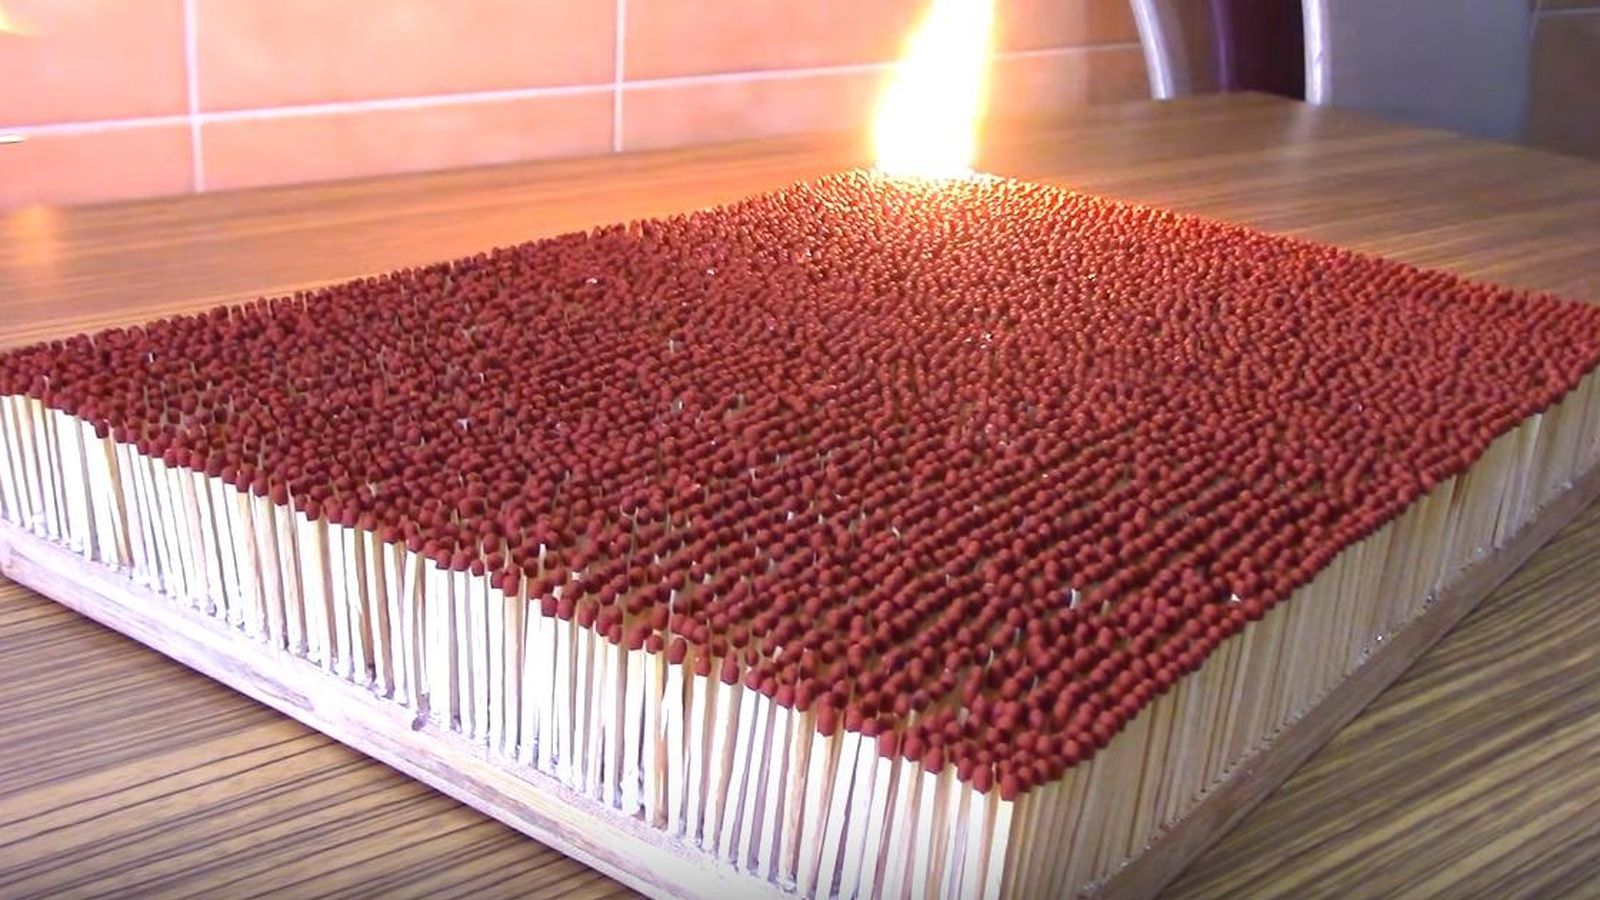 Foto: Esto es lo que pasa al quemar 6.000 cerillas a la vez (YouTube)